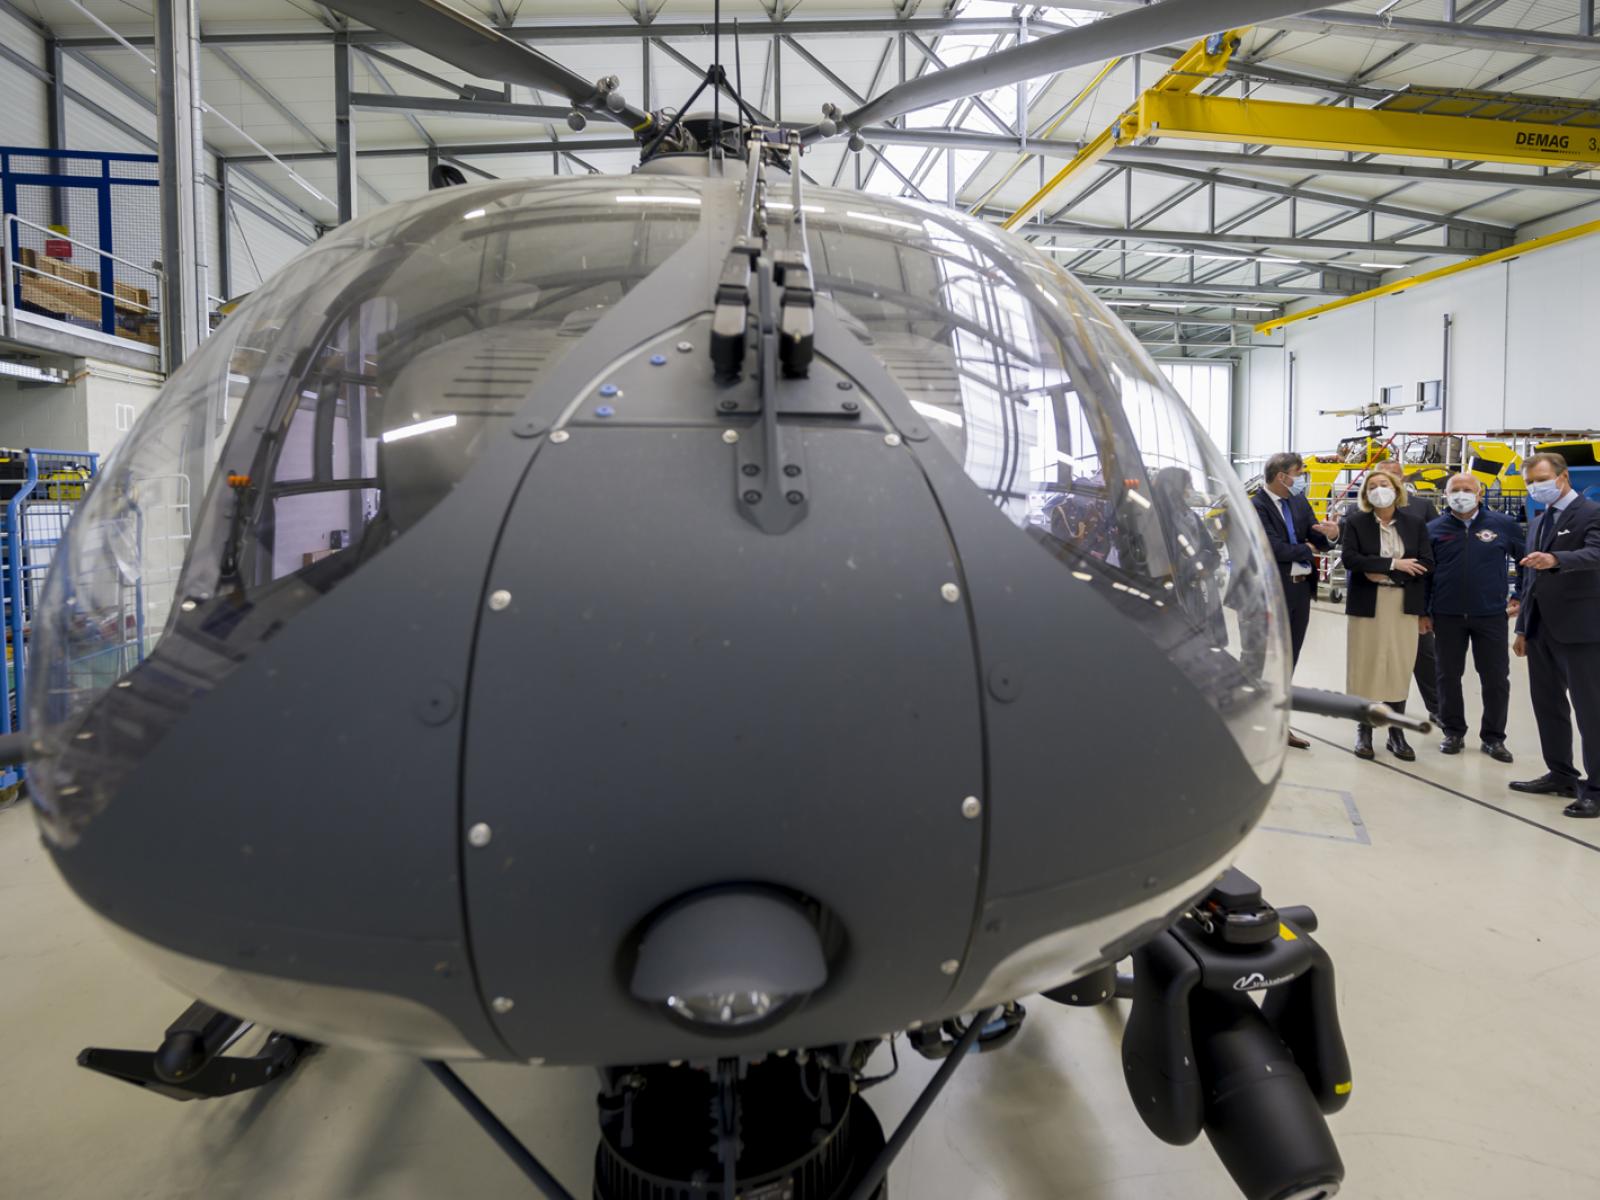 Visite du hangar de la Luxembourg Air Rescue